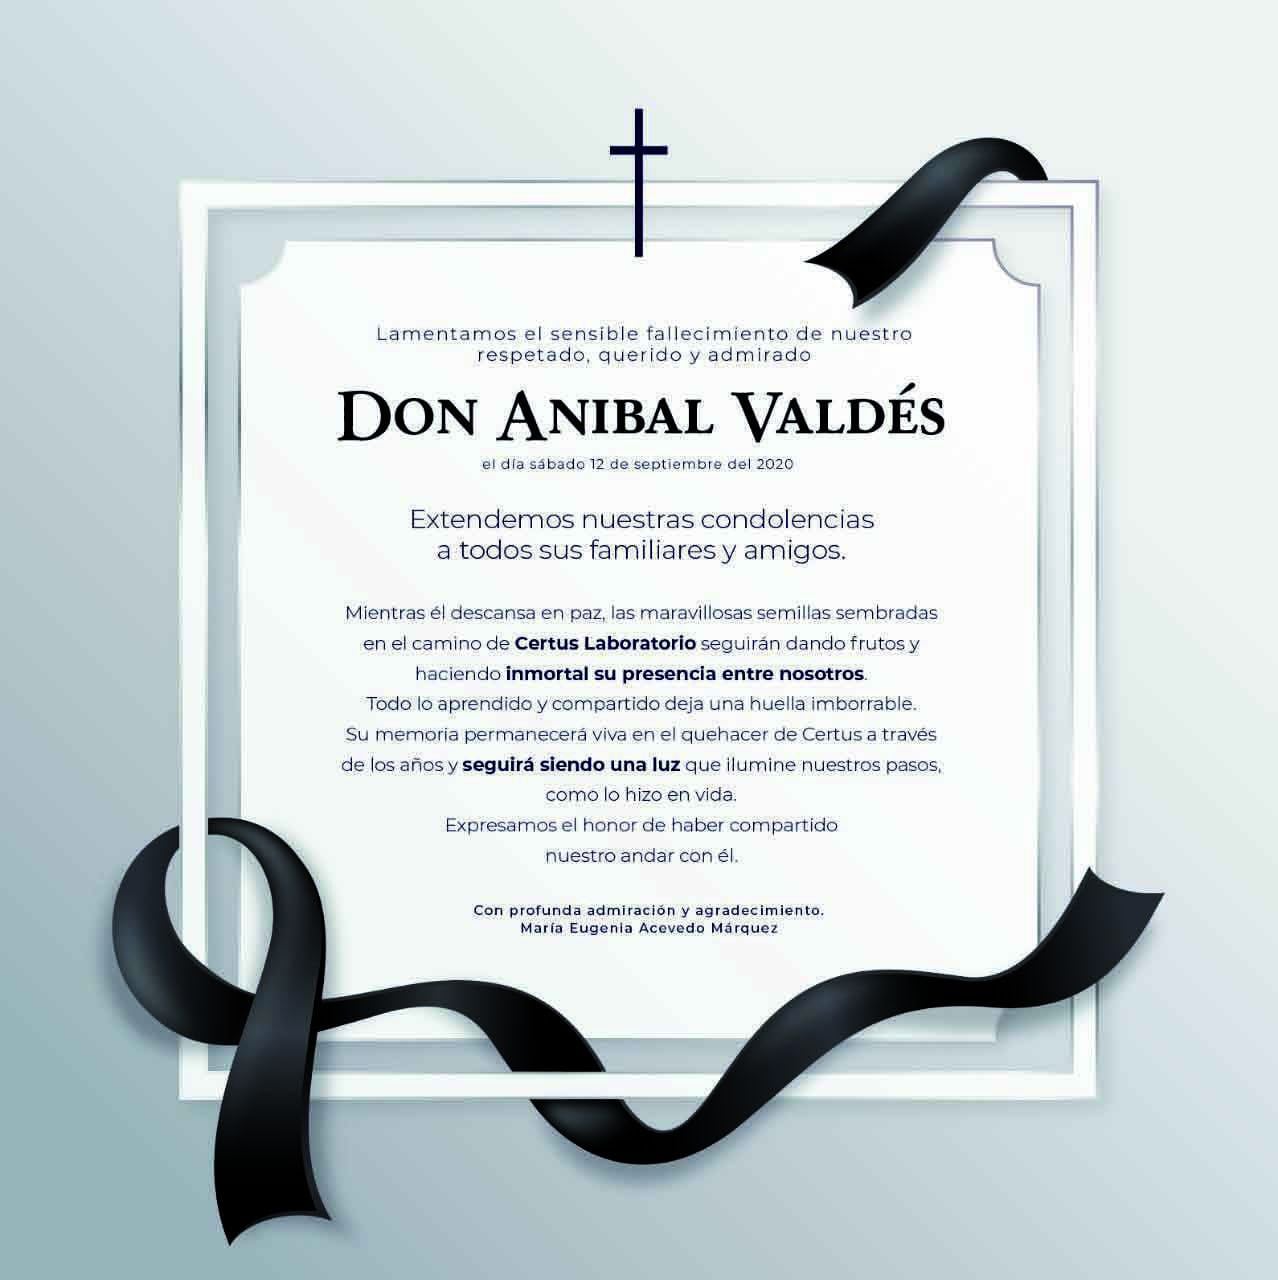 Don Anibal Valdés